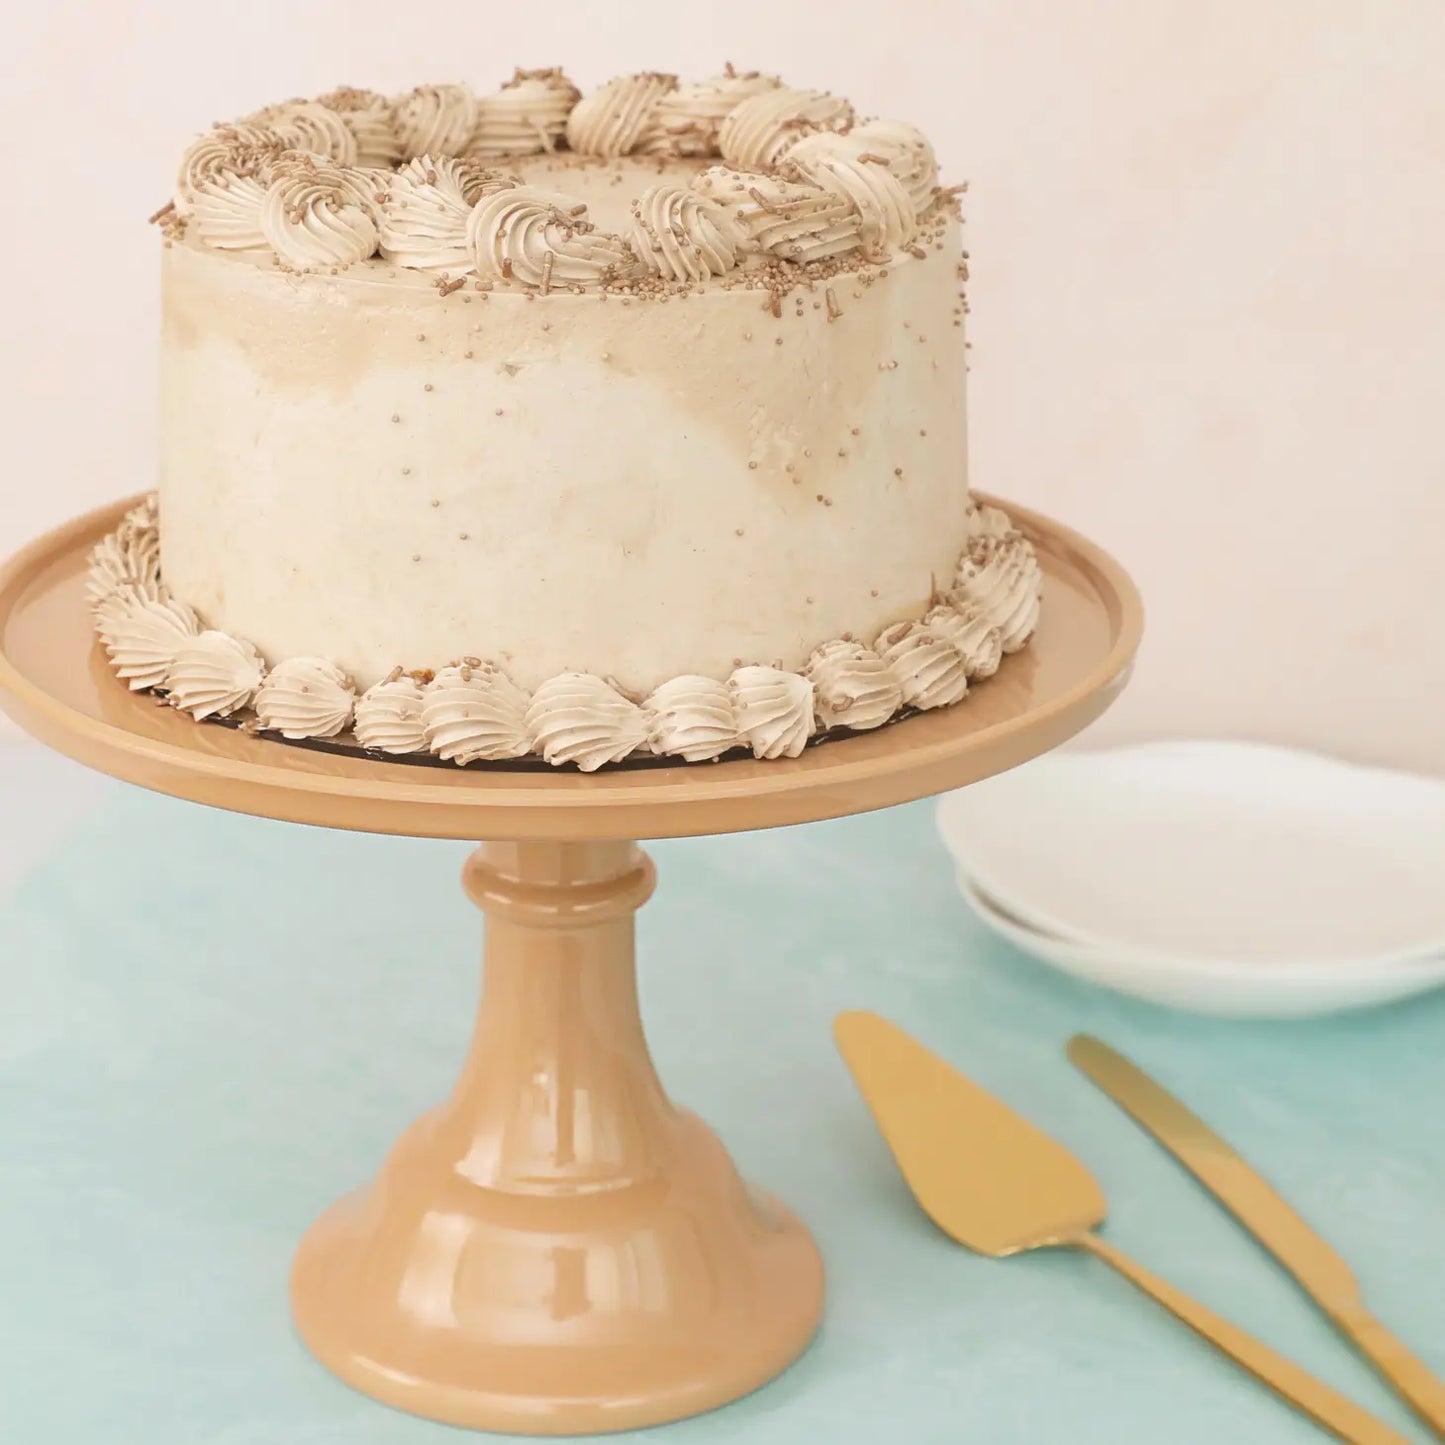 Melamine Bespoke Cake Stand Large - Latte